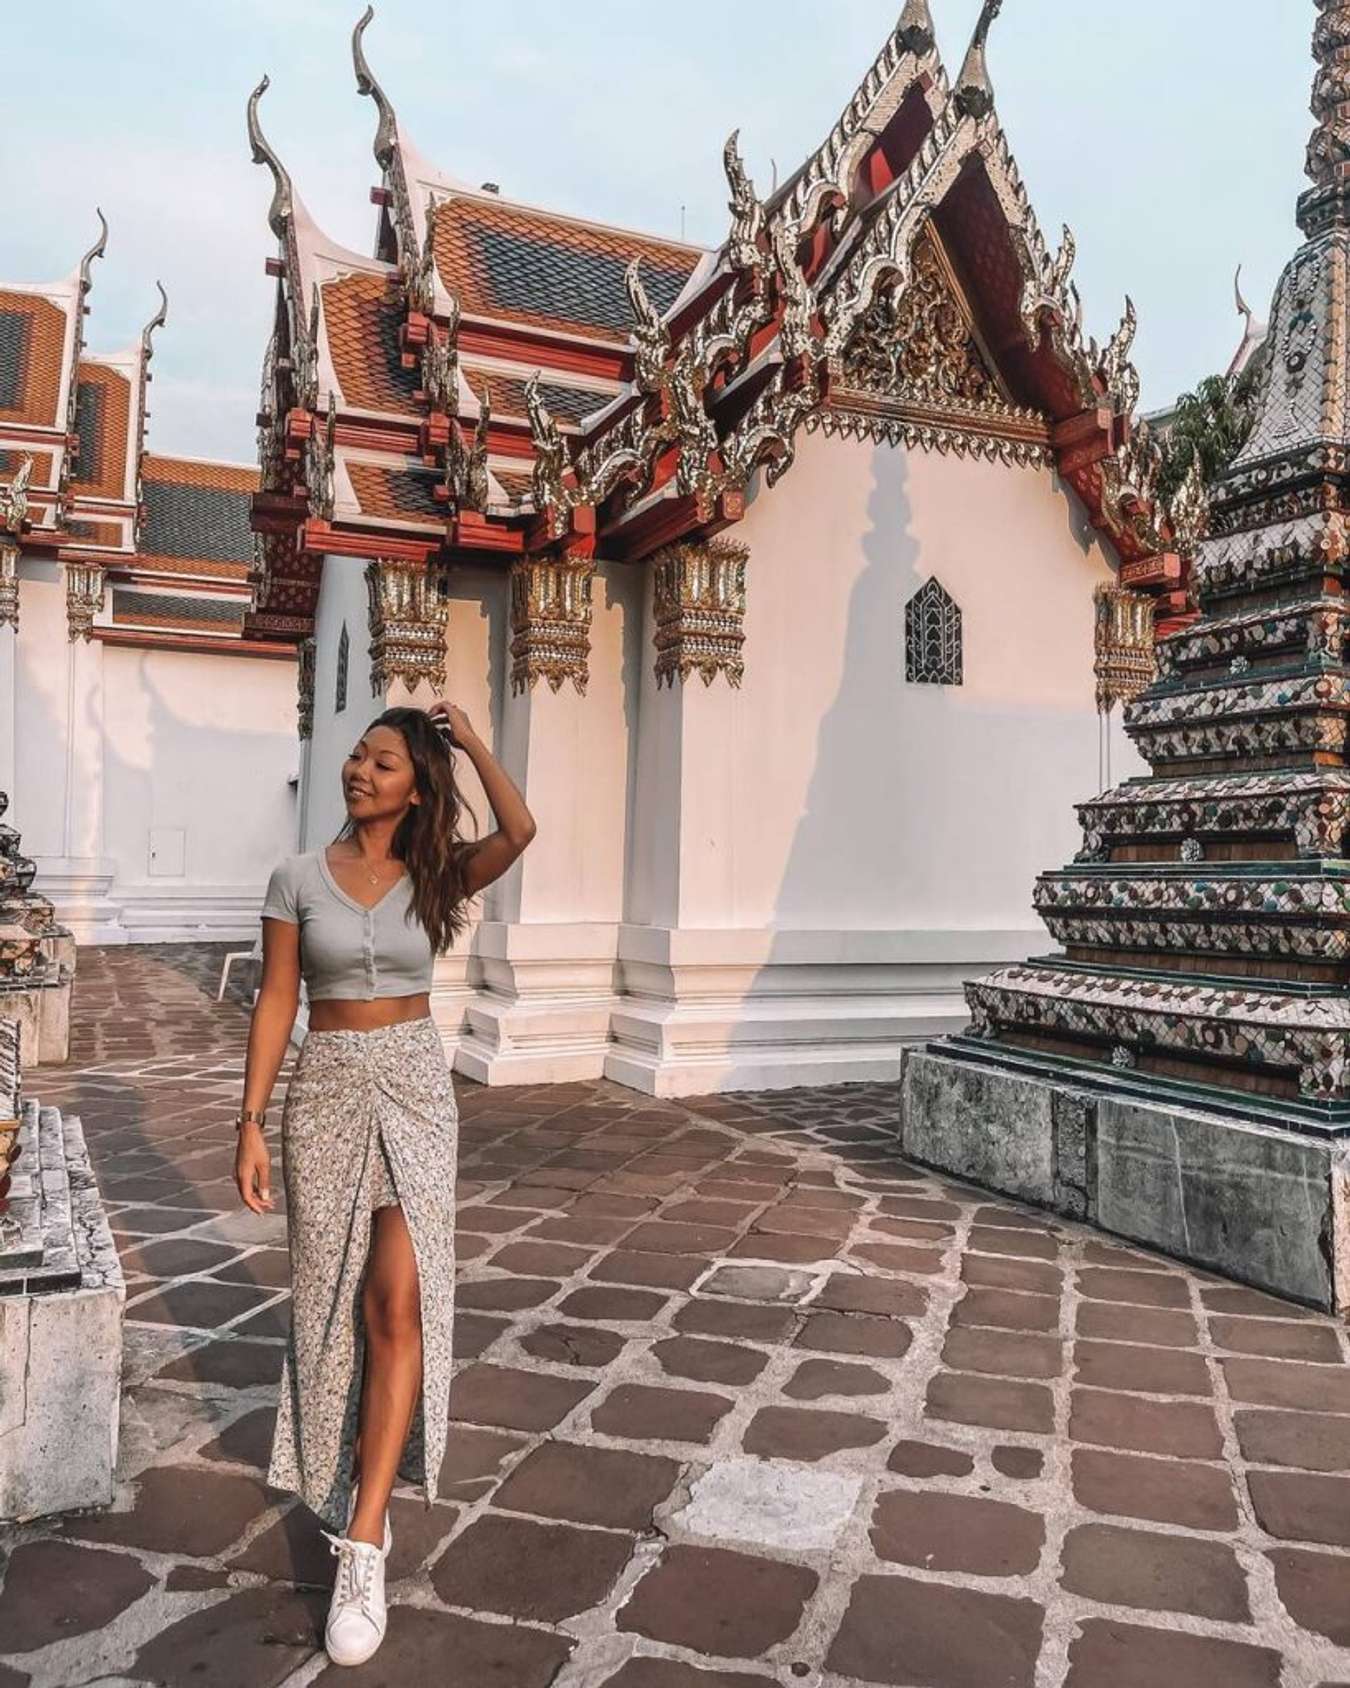 Đền chùa tại Thái Lan có nét đẹp khác biệt và có giá trị văn hóa lâu đời